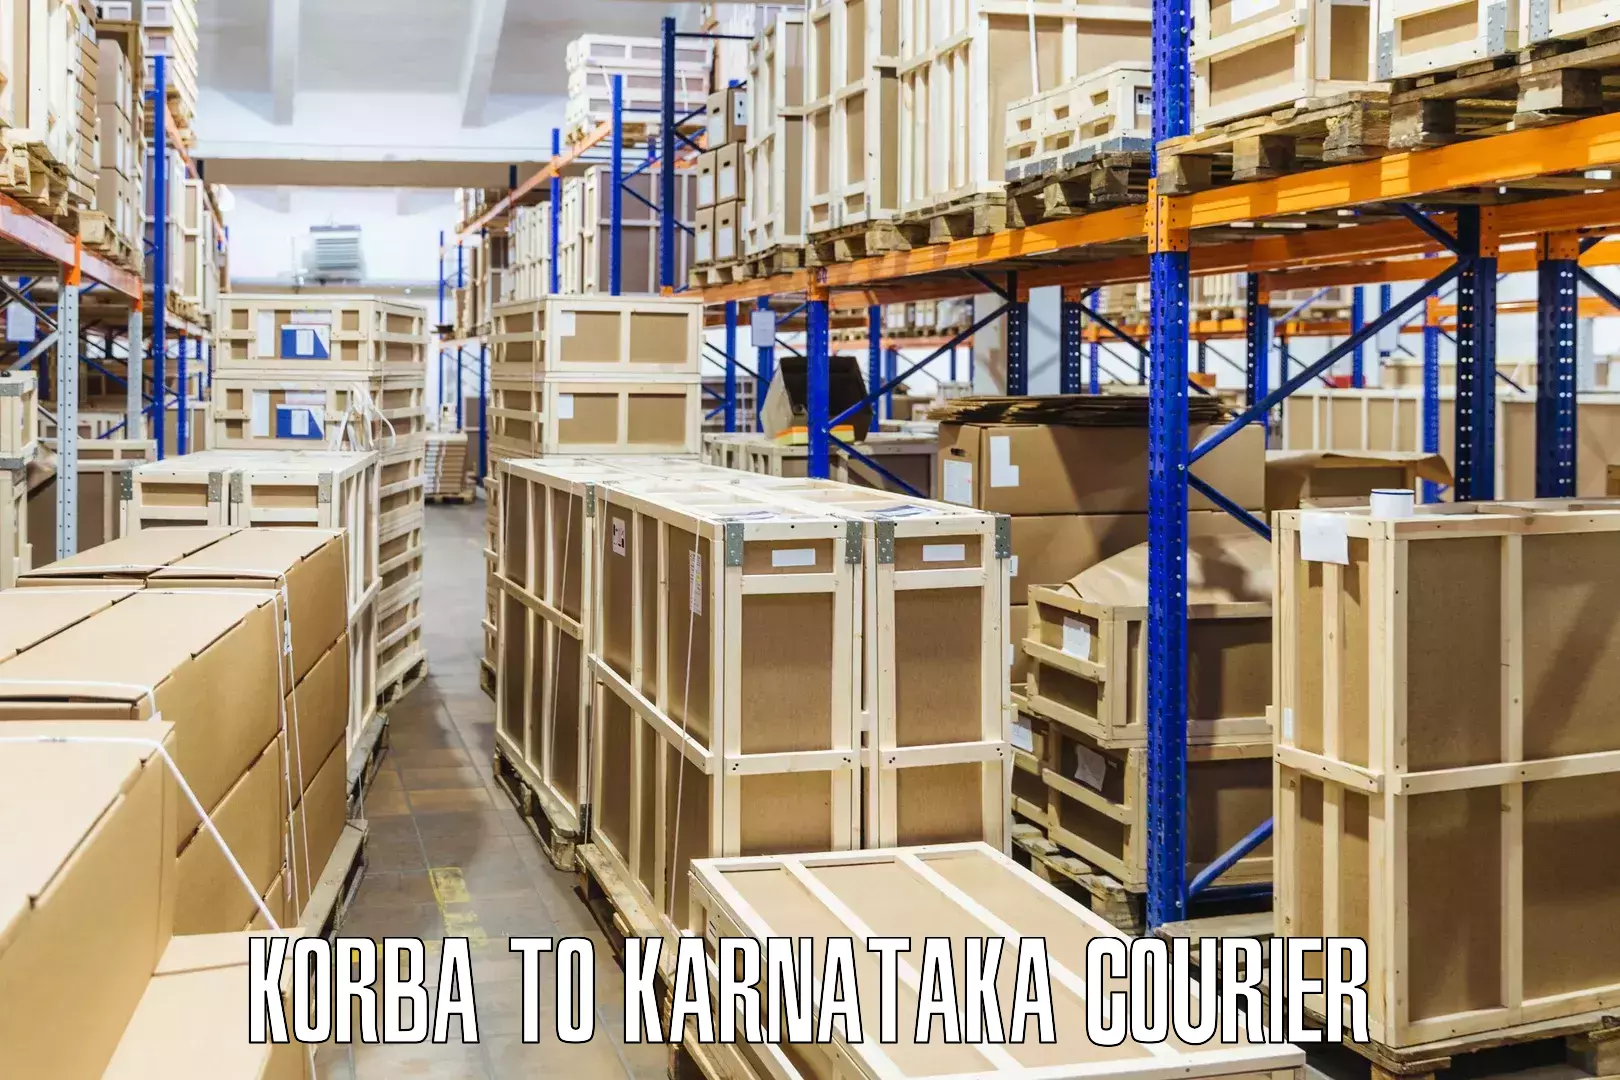 Cargo courier service Korba to Channarayapatna